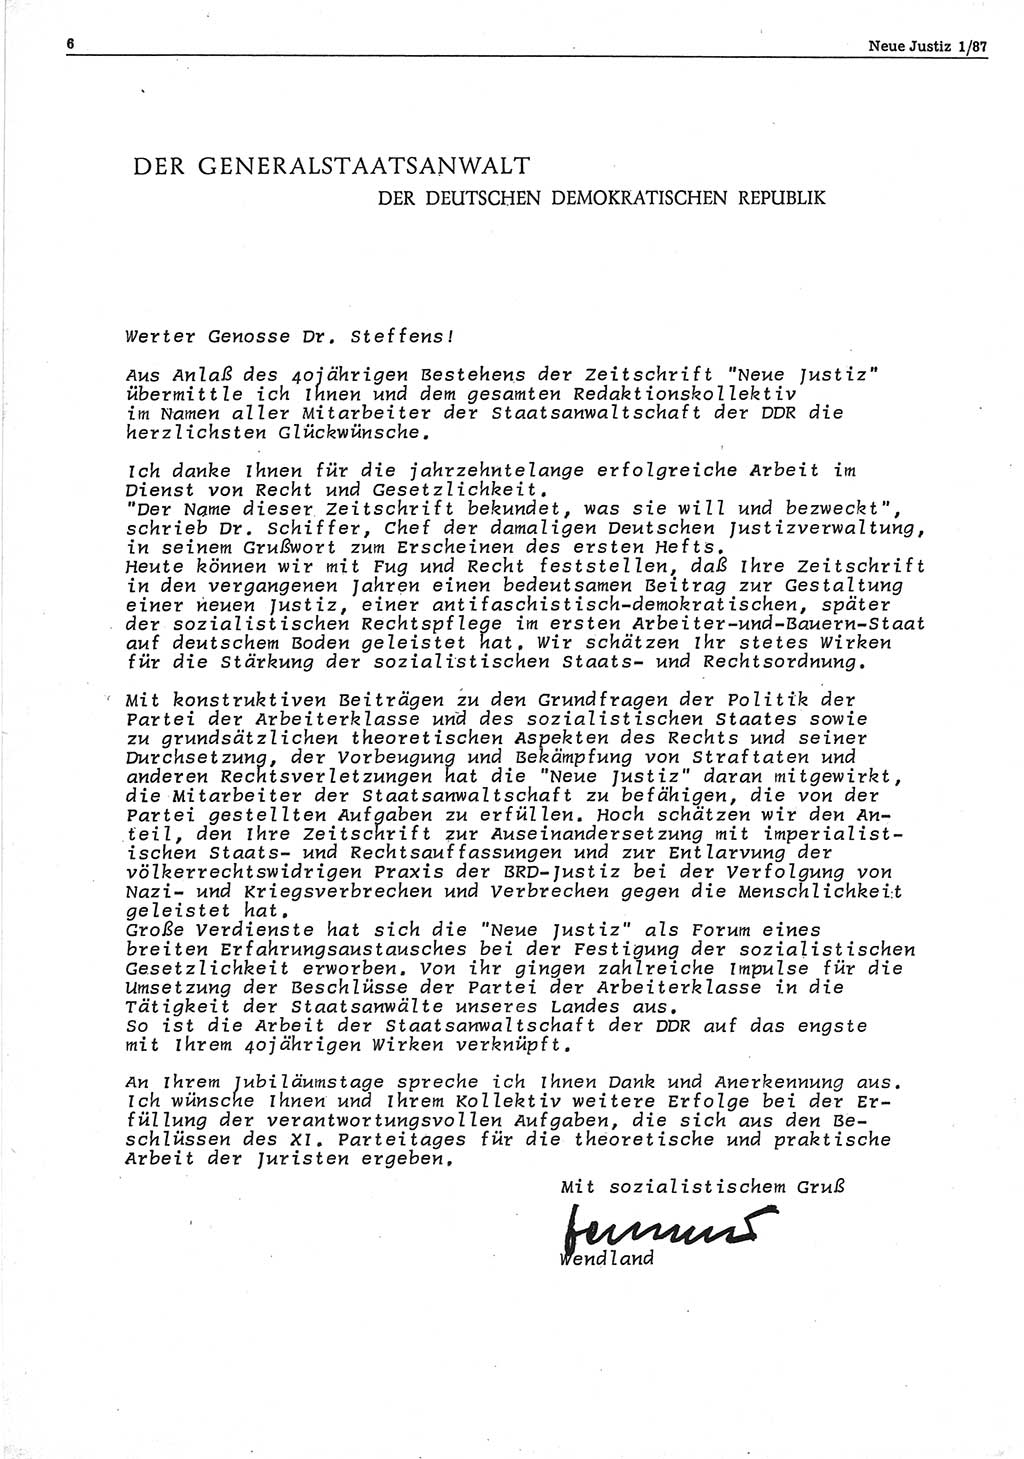 Neue Justiz (NJ), Zeitschrift für sozialistisches Recht und Gesetzlichkeit [Deutsche Demokratische Republik (DDR)], 41. Jahrgang 1987, Seite 6 (NJ DDR 1987, S. 6)